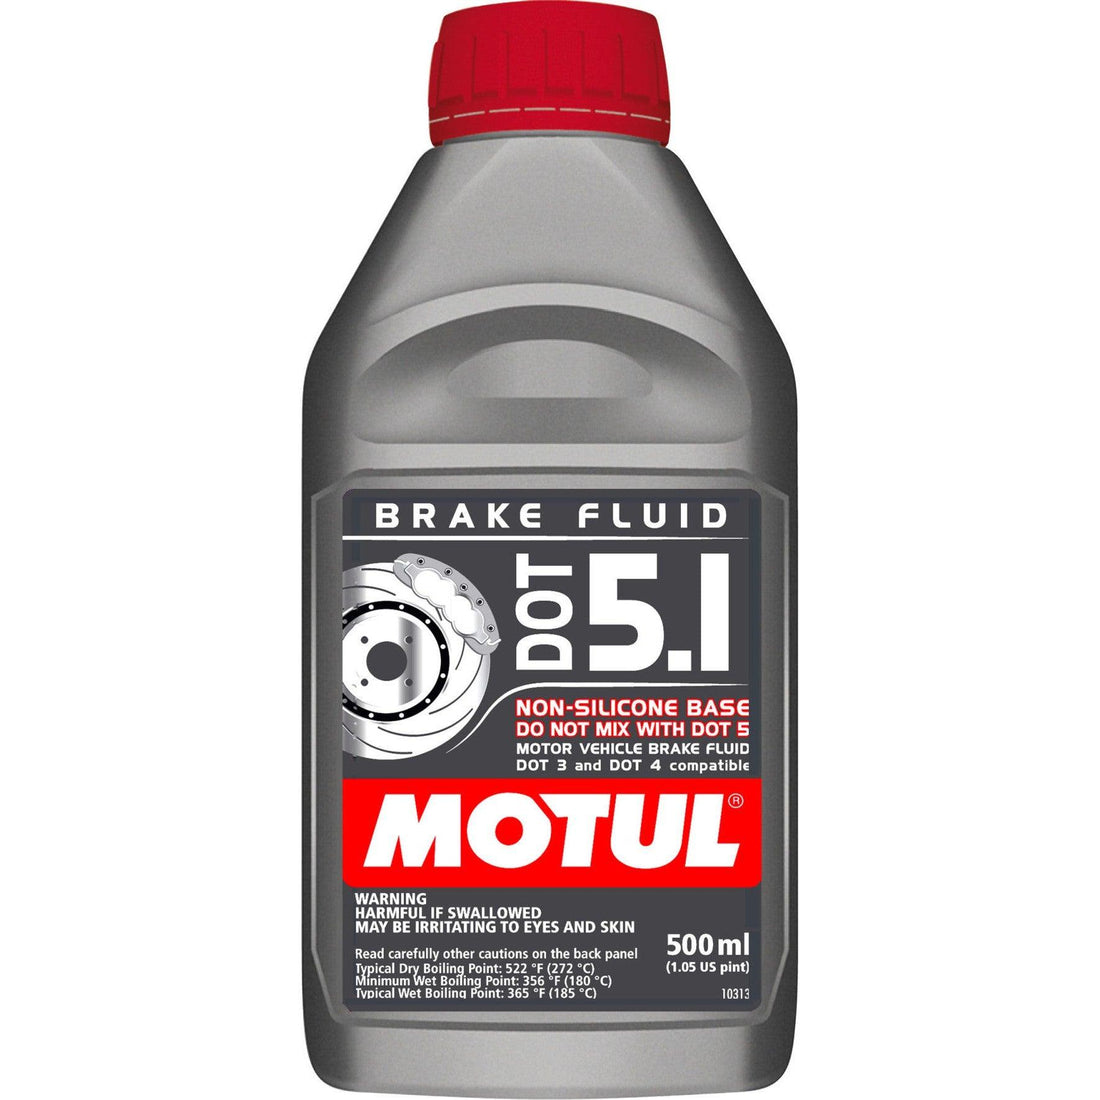 Motul 1/2L Brake Fluid DOT 5.1 - Saikospeed